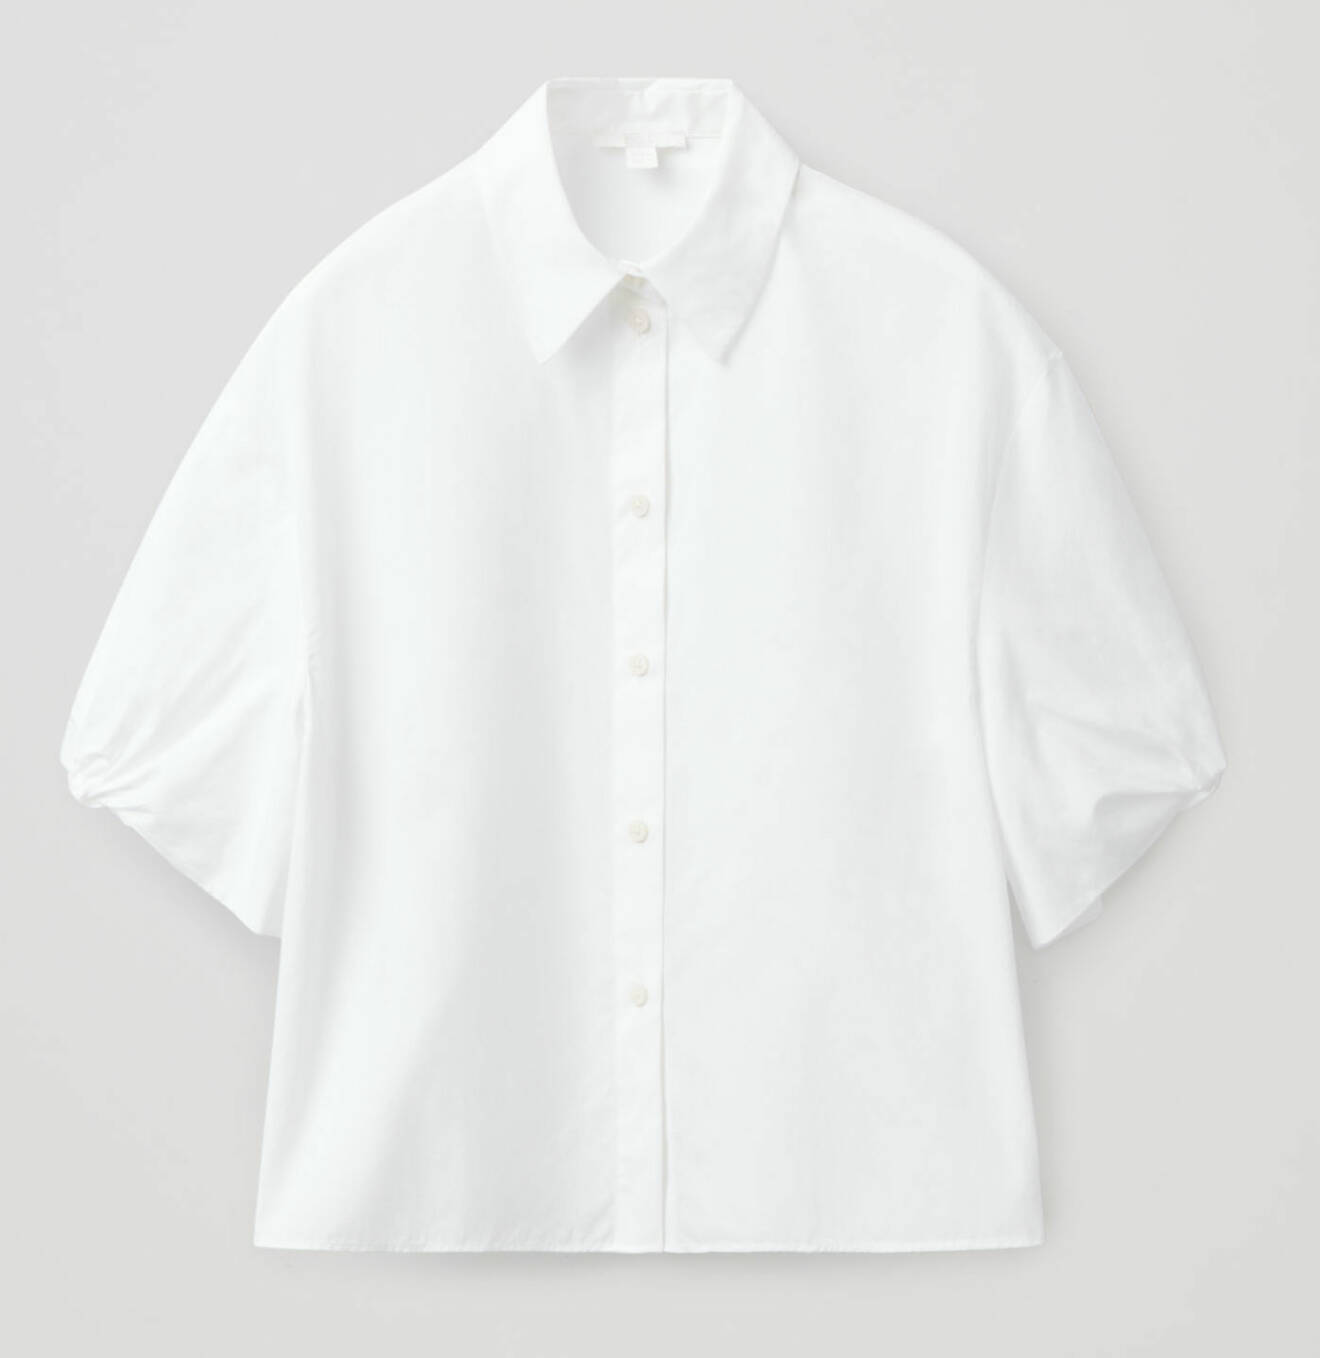 https://www.cosstores.com/en_sek/women/womenswear/shirts/product.puff-sleeve-boxy-cotton-shirt-white.0888170001.html